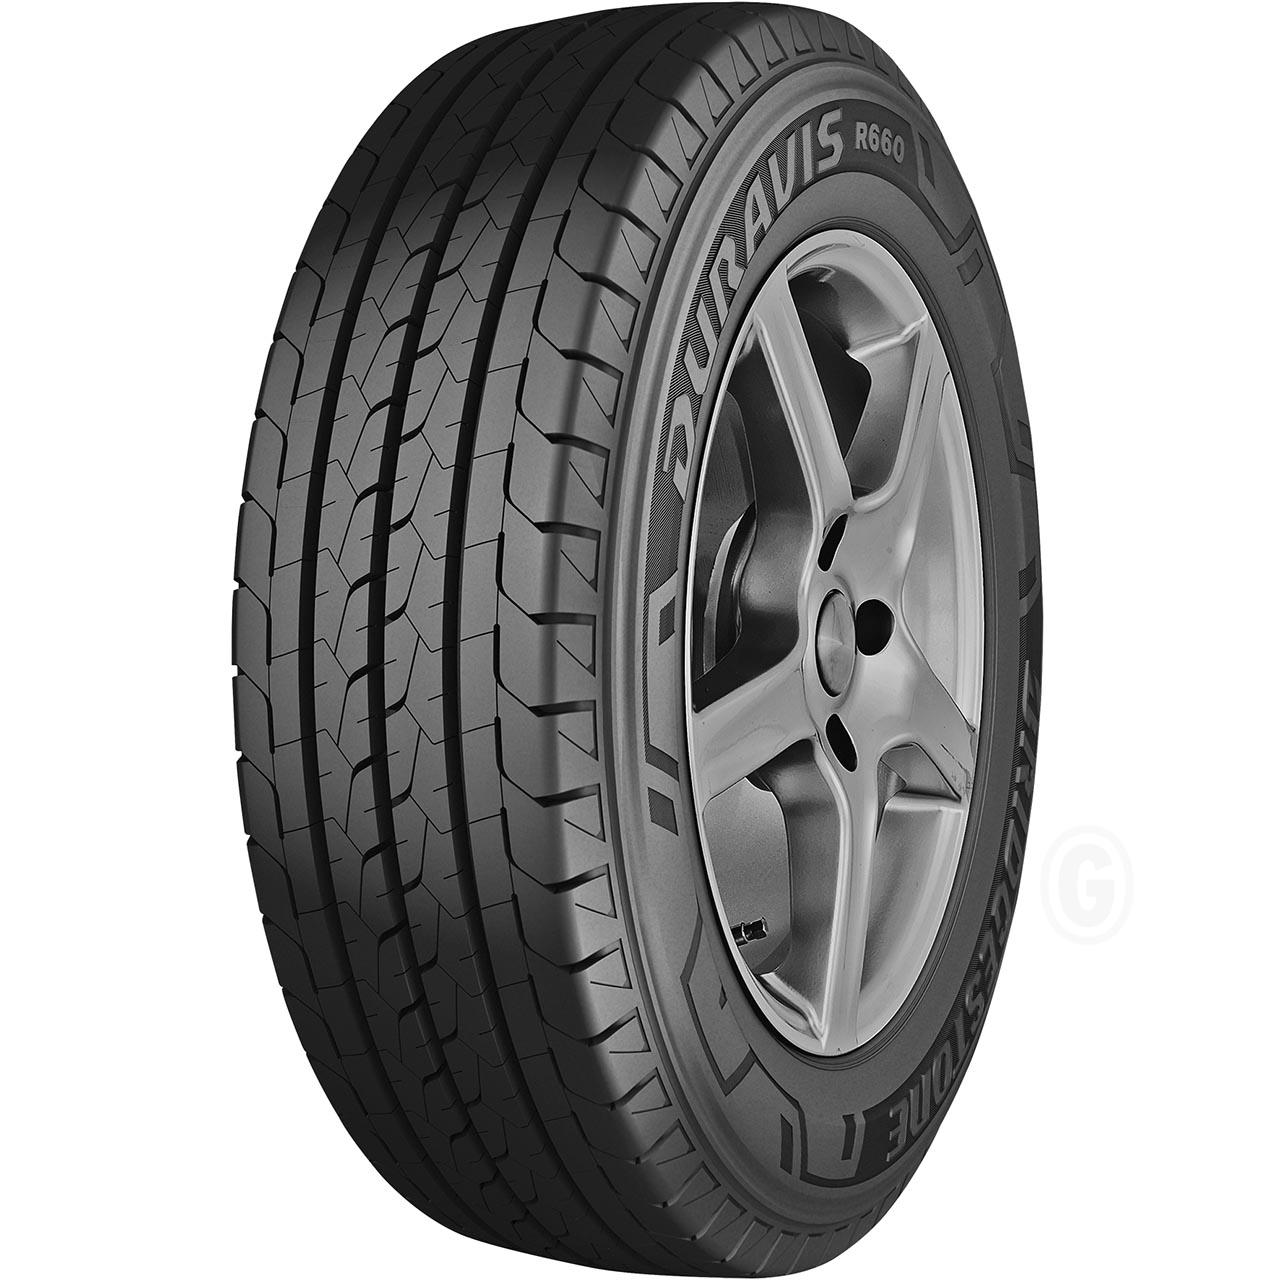 Bridgestone Duravis R660 215/75R16C 116/114R